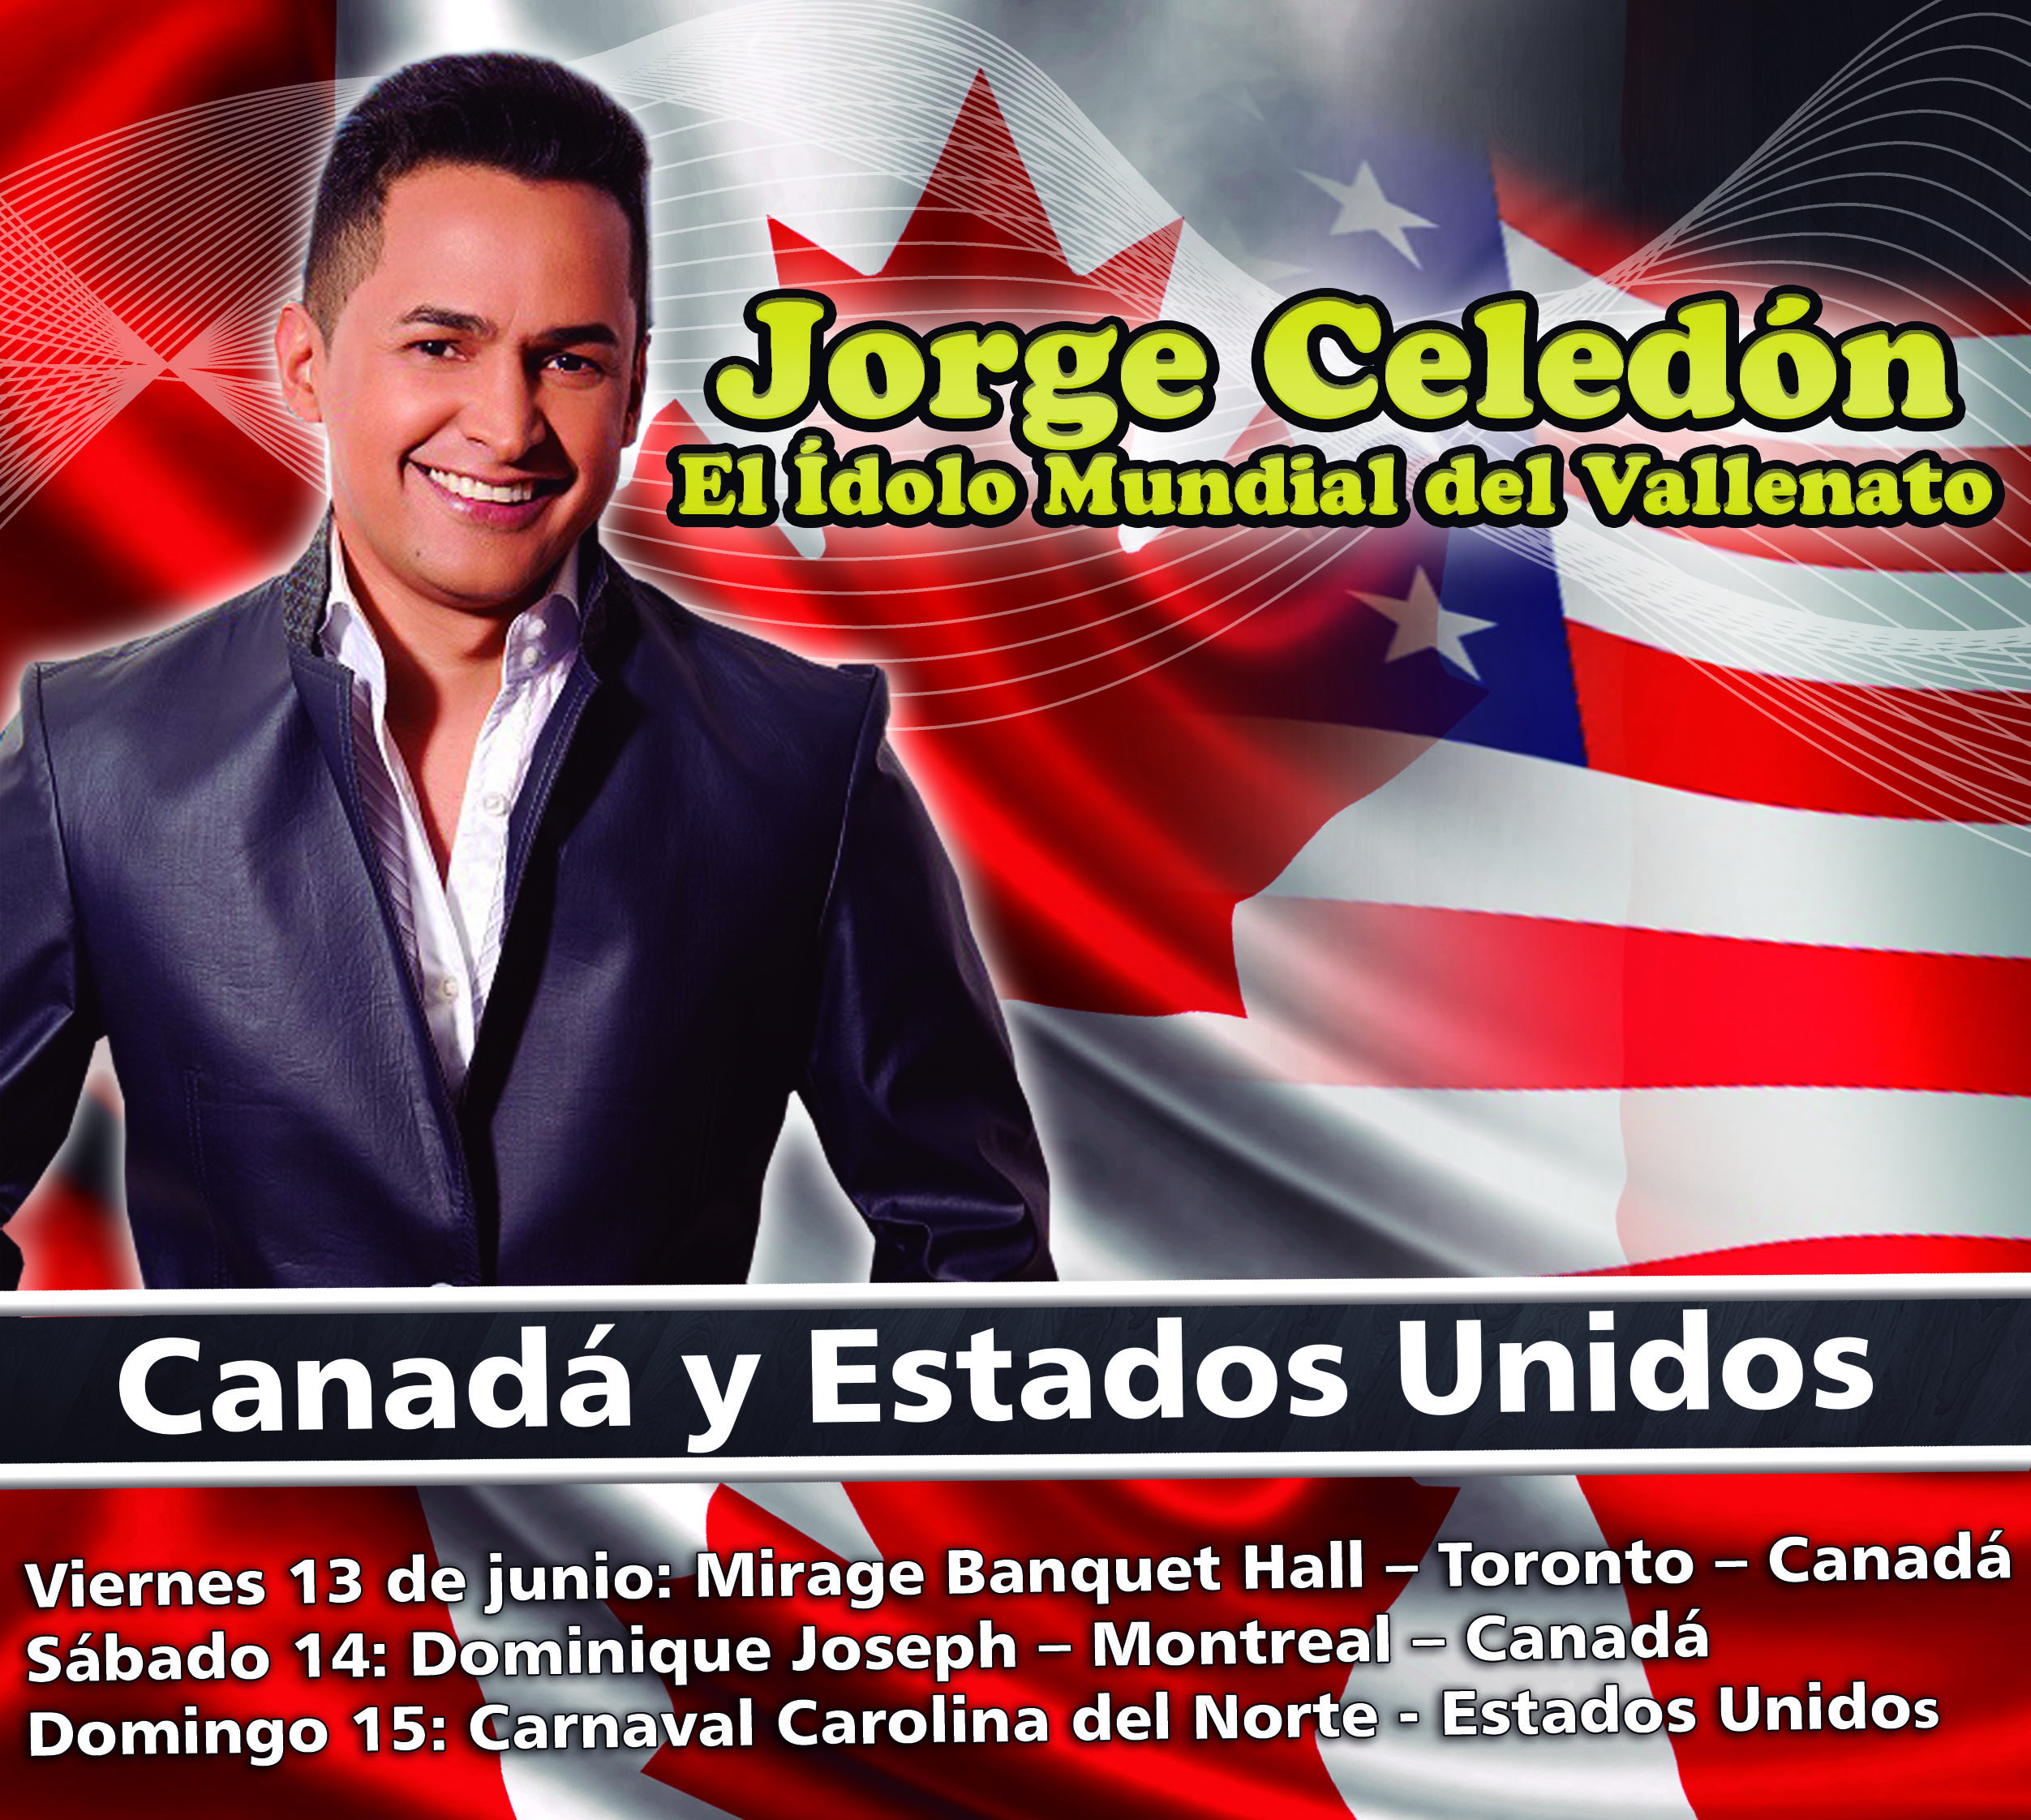 Jorge Celedón en Canadá y Estados Unidos